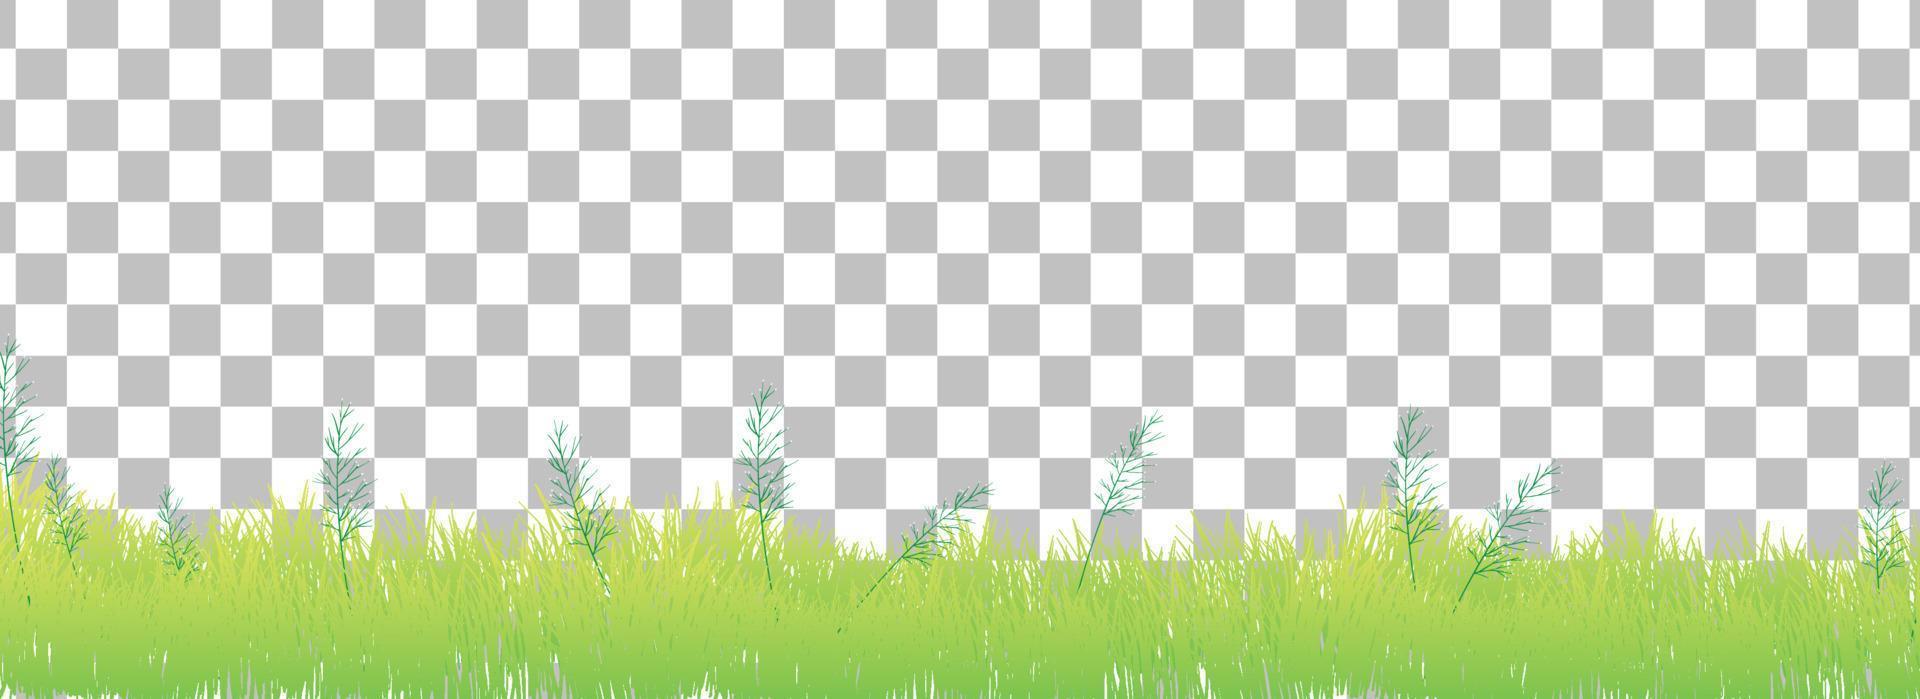 grünes Gras auf Gitterhintergrund vektor